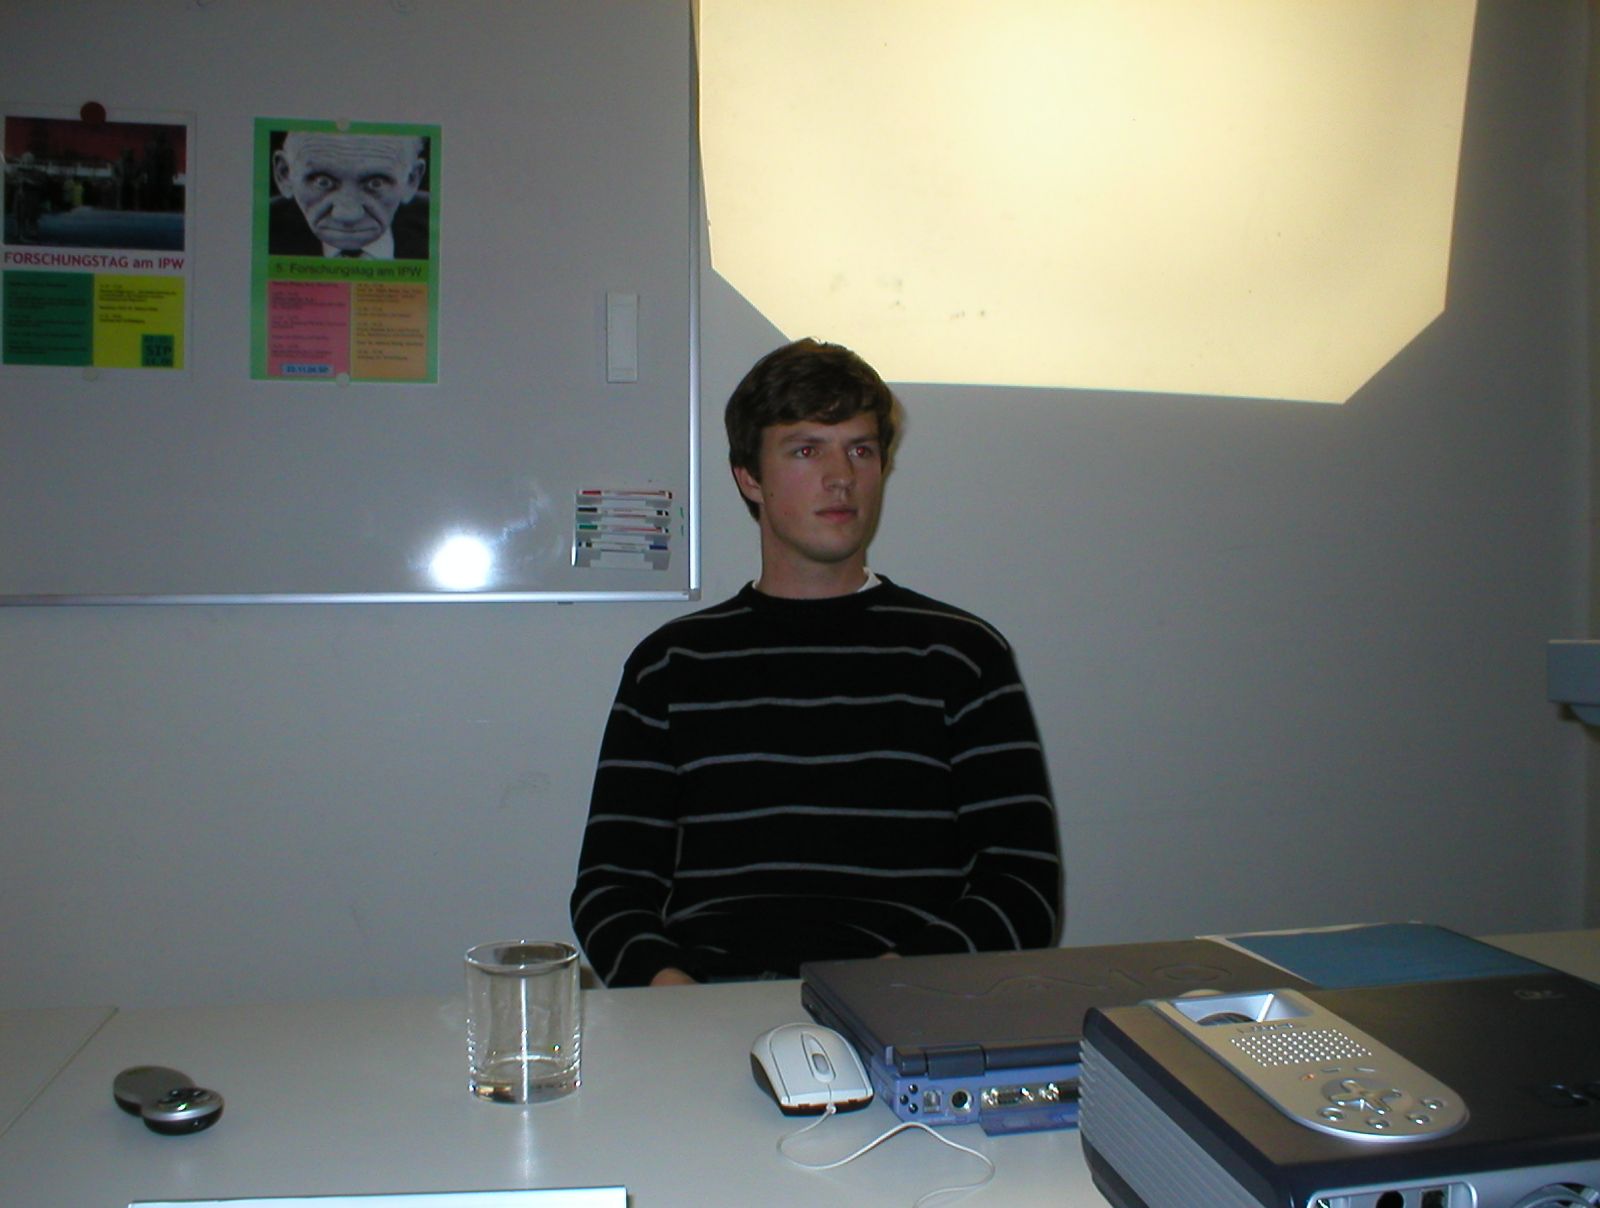 Foto vom Forschungstag 2006